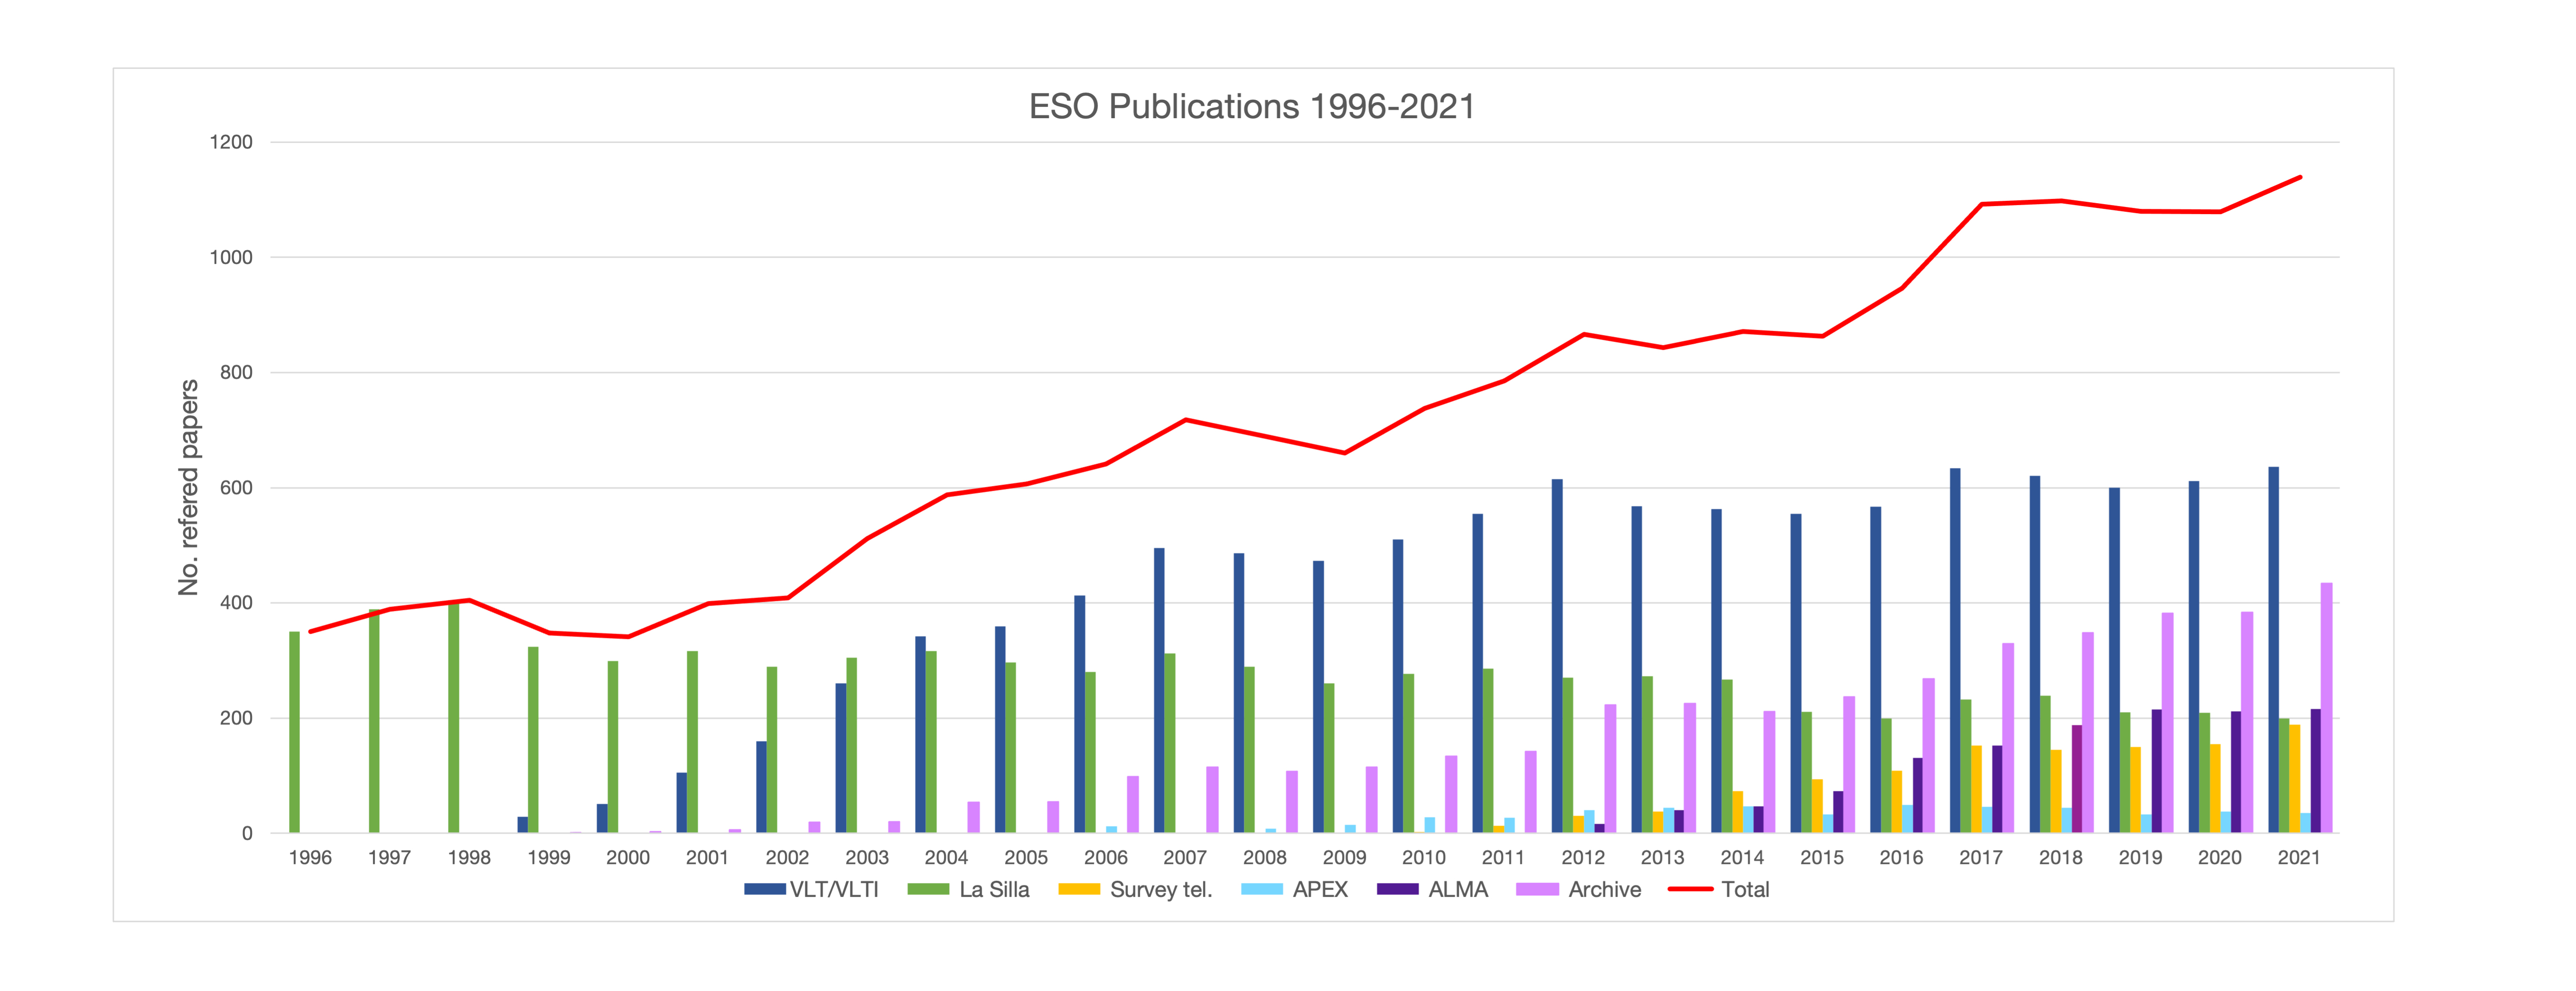 Número de artigos publicados com base em dados obtidos nos observatórios do ESO (1996-2021)